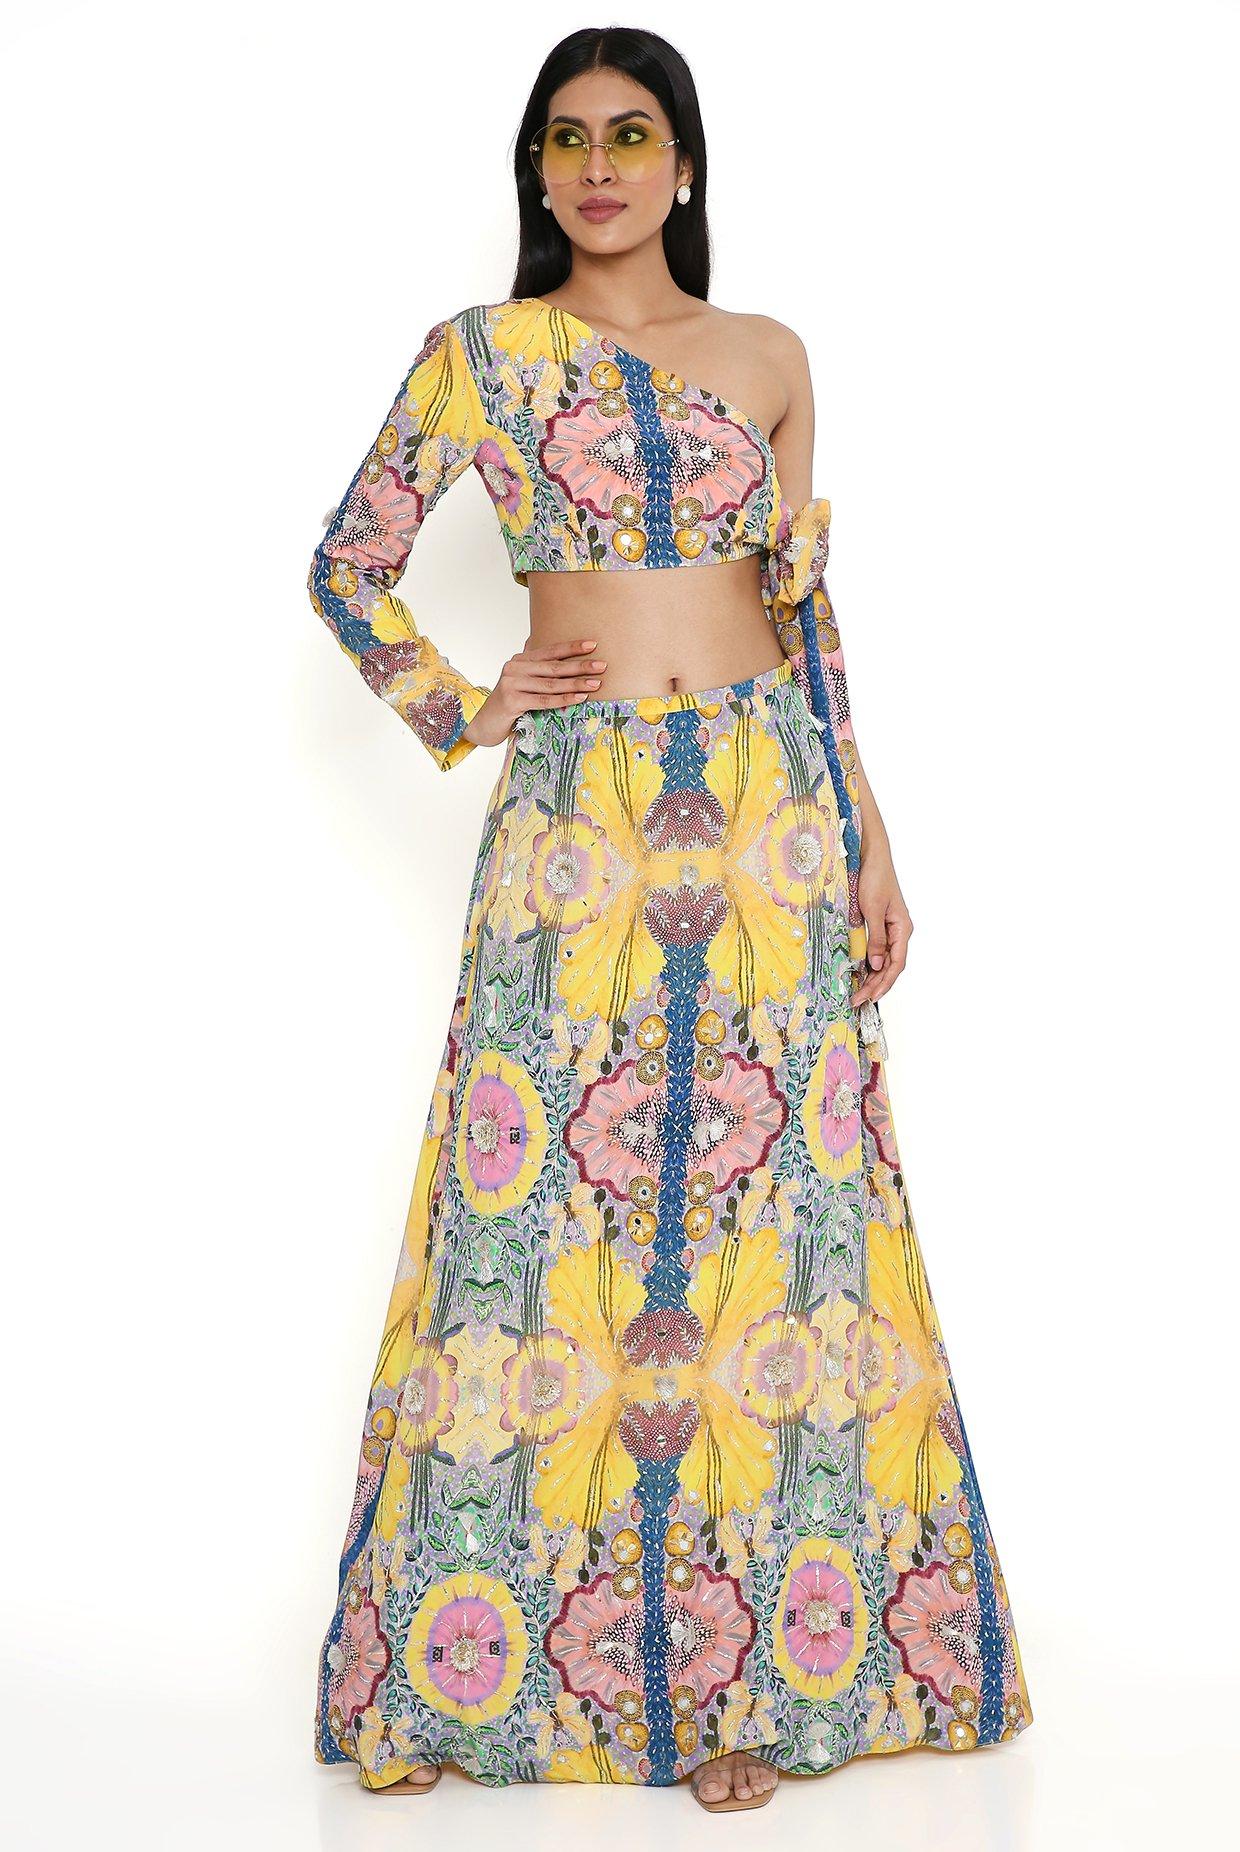 New Essence Designer Haldi Dress for Bride Sister